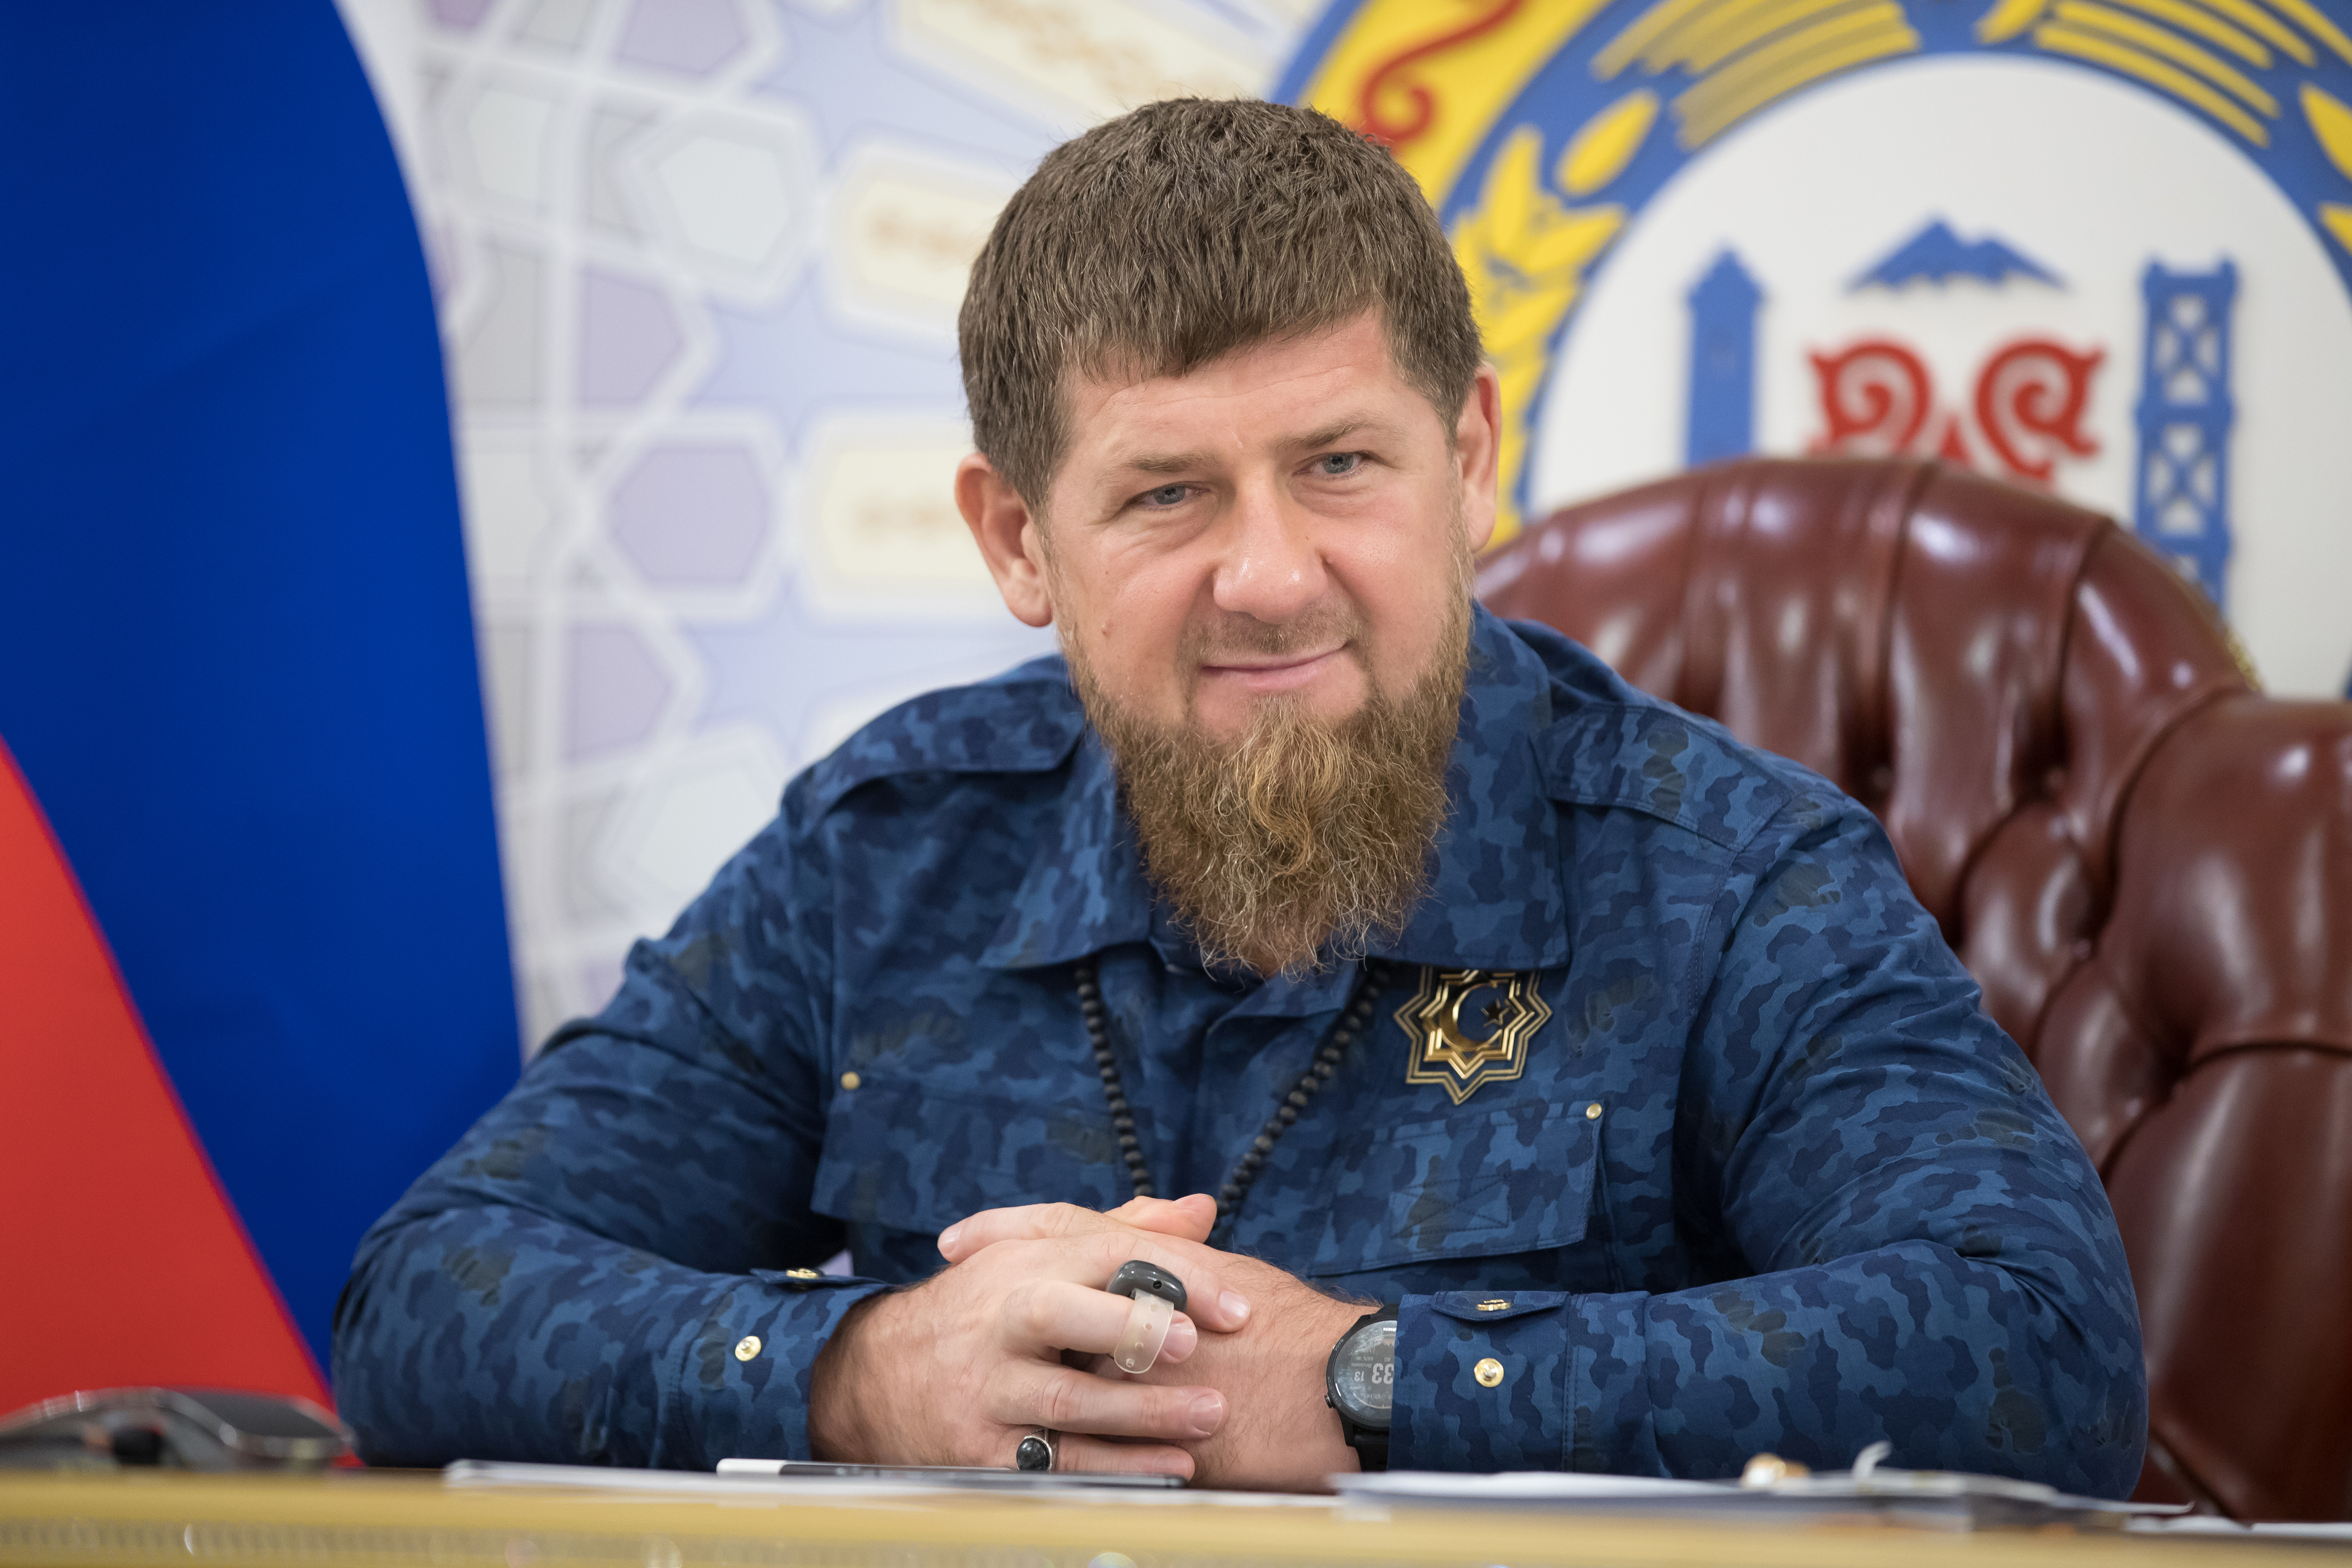 Кадыров объявил о третьем этапе снятия ограничений по коронавирусу в Чечне